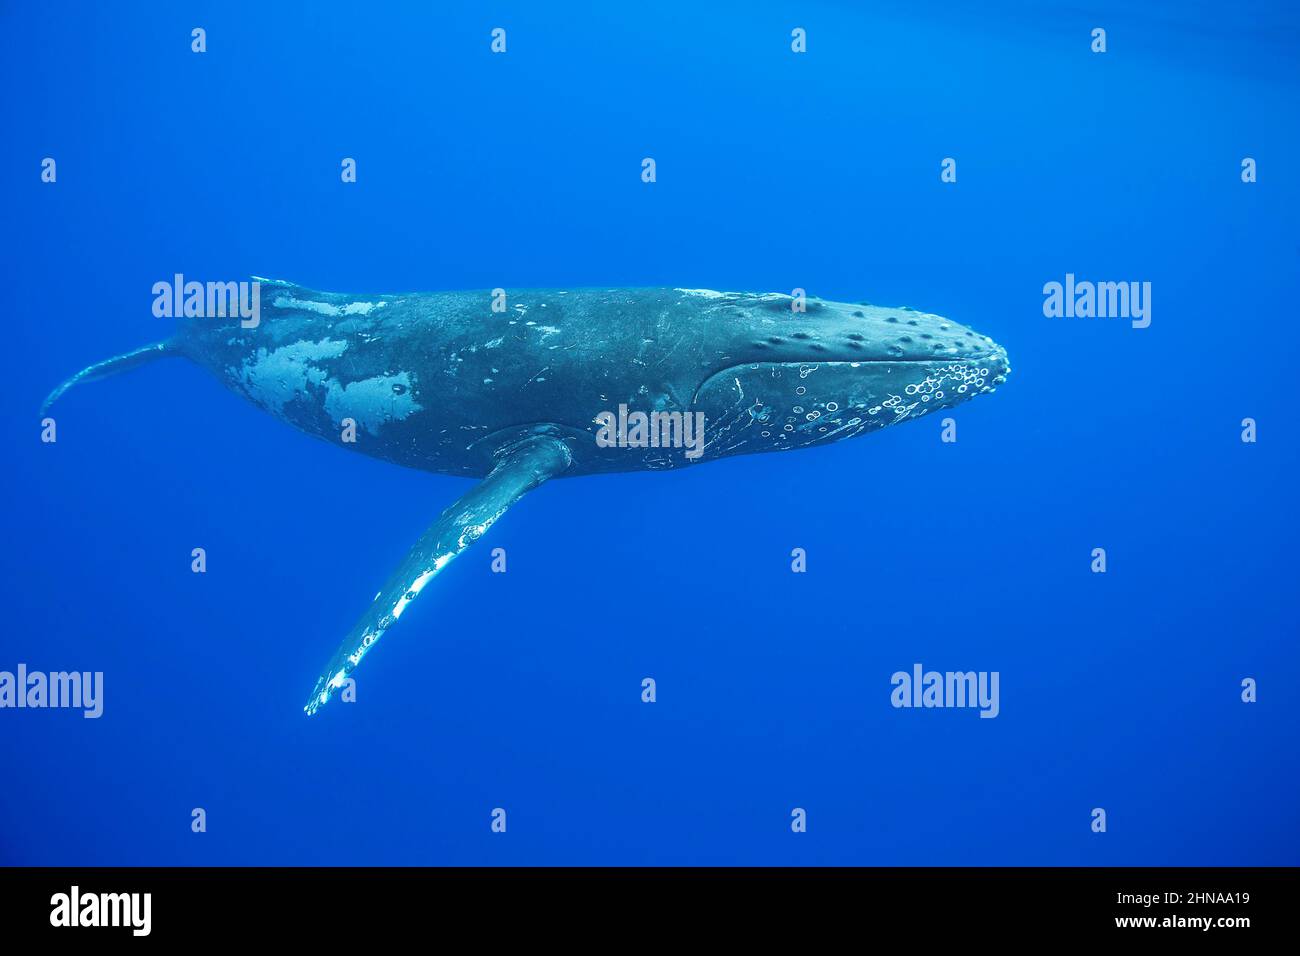 Une baleine à bosse, Megaptera novaeangliae, glisse dans les eaux bleues d'Hawaï. Banque D'Images